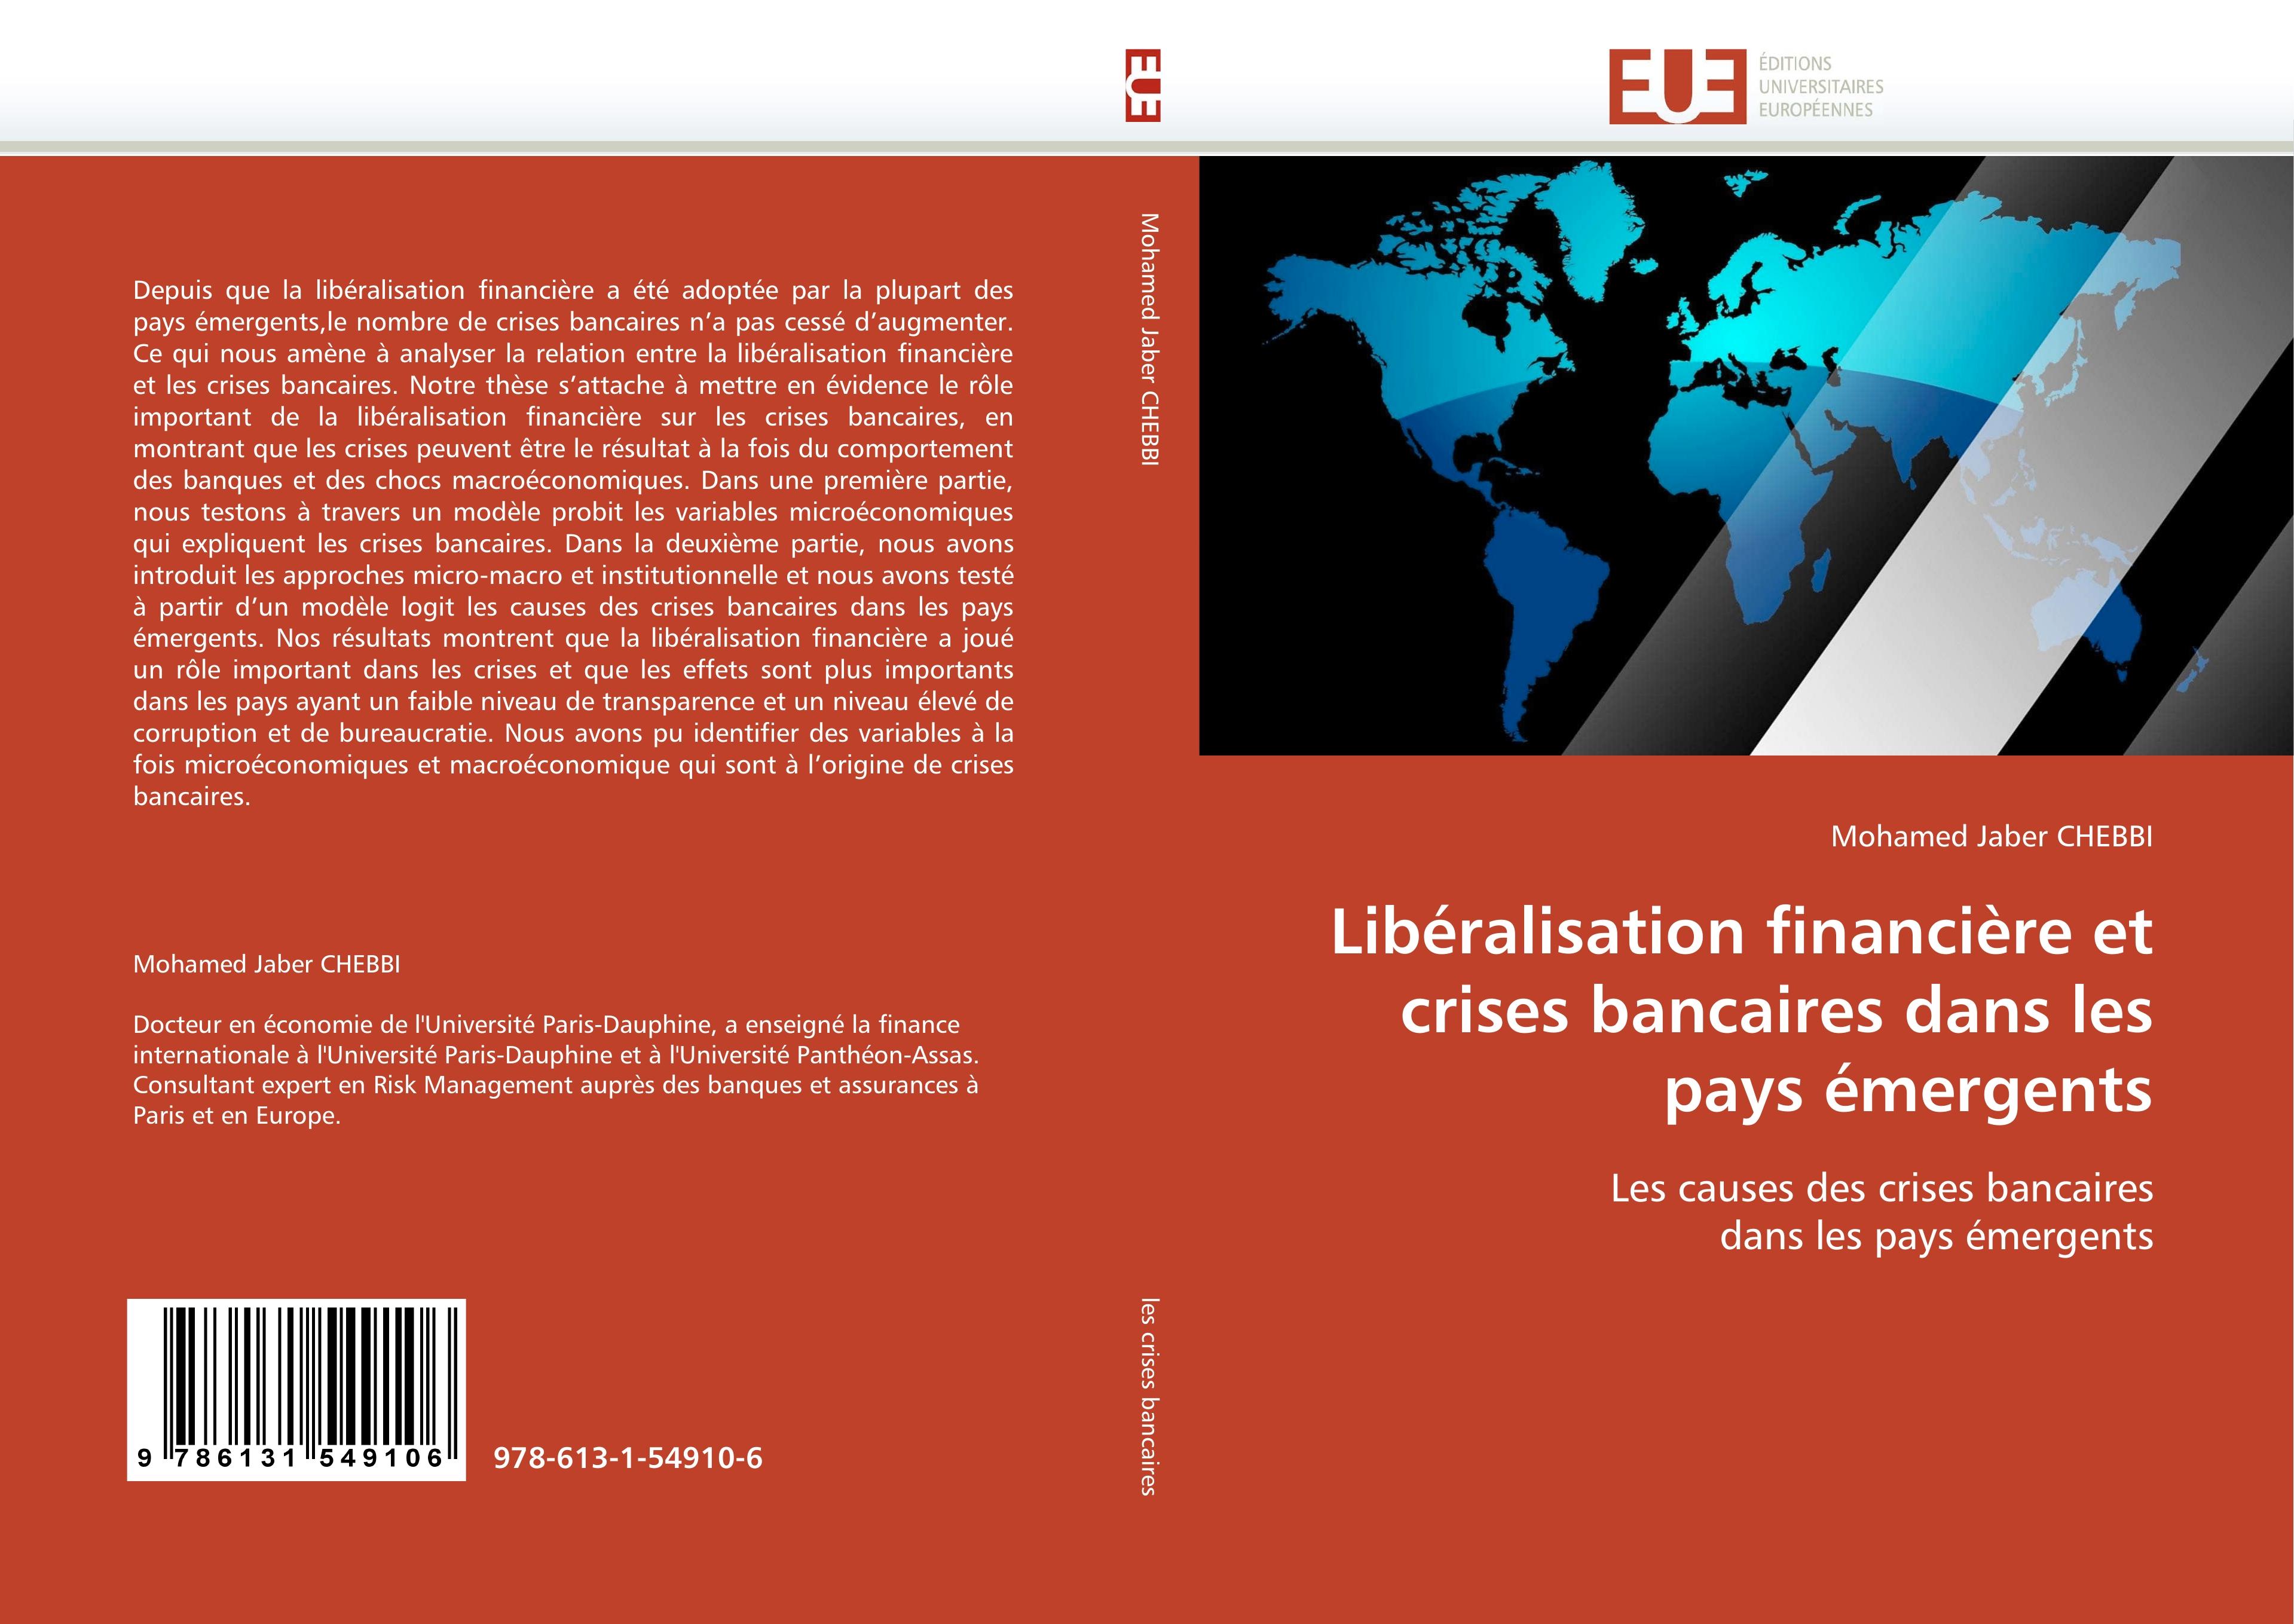 Libéralisation financière et crises bancaires dans les pays émergents - Mohamed Jaber CHEBBI